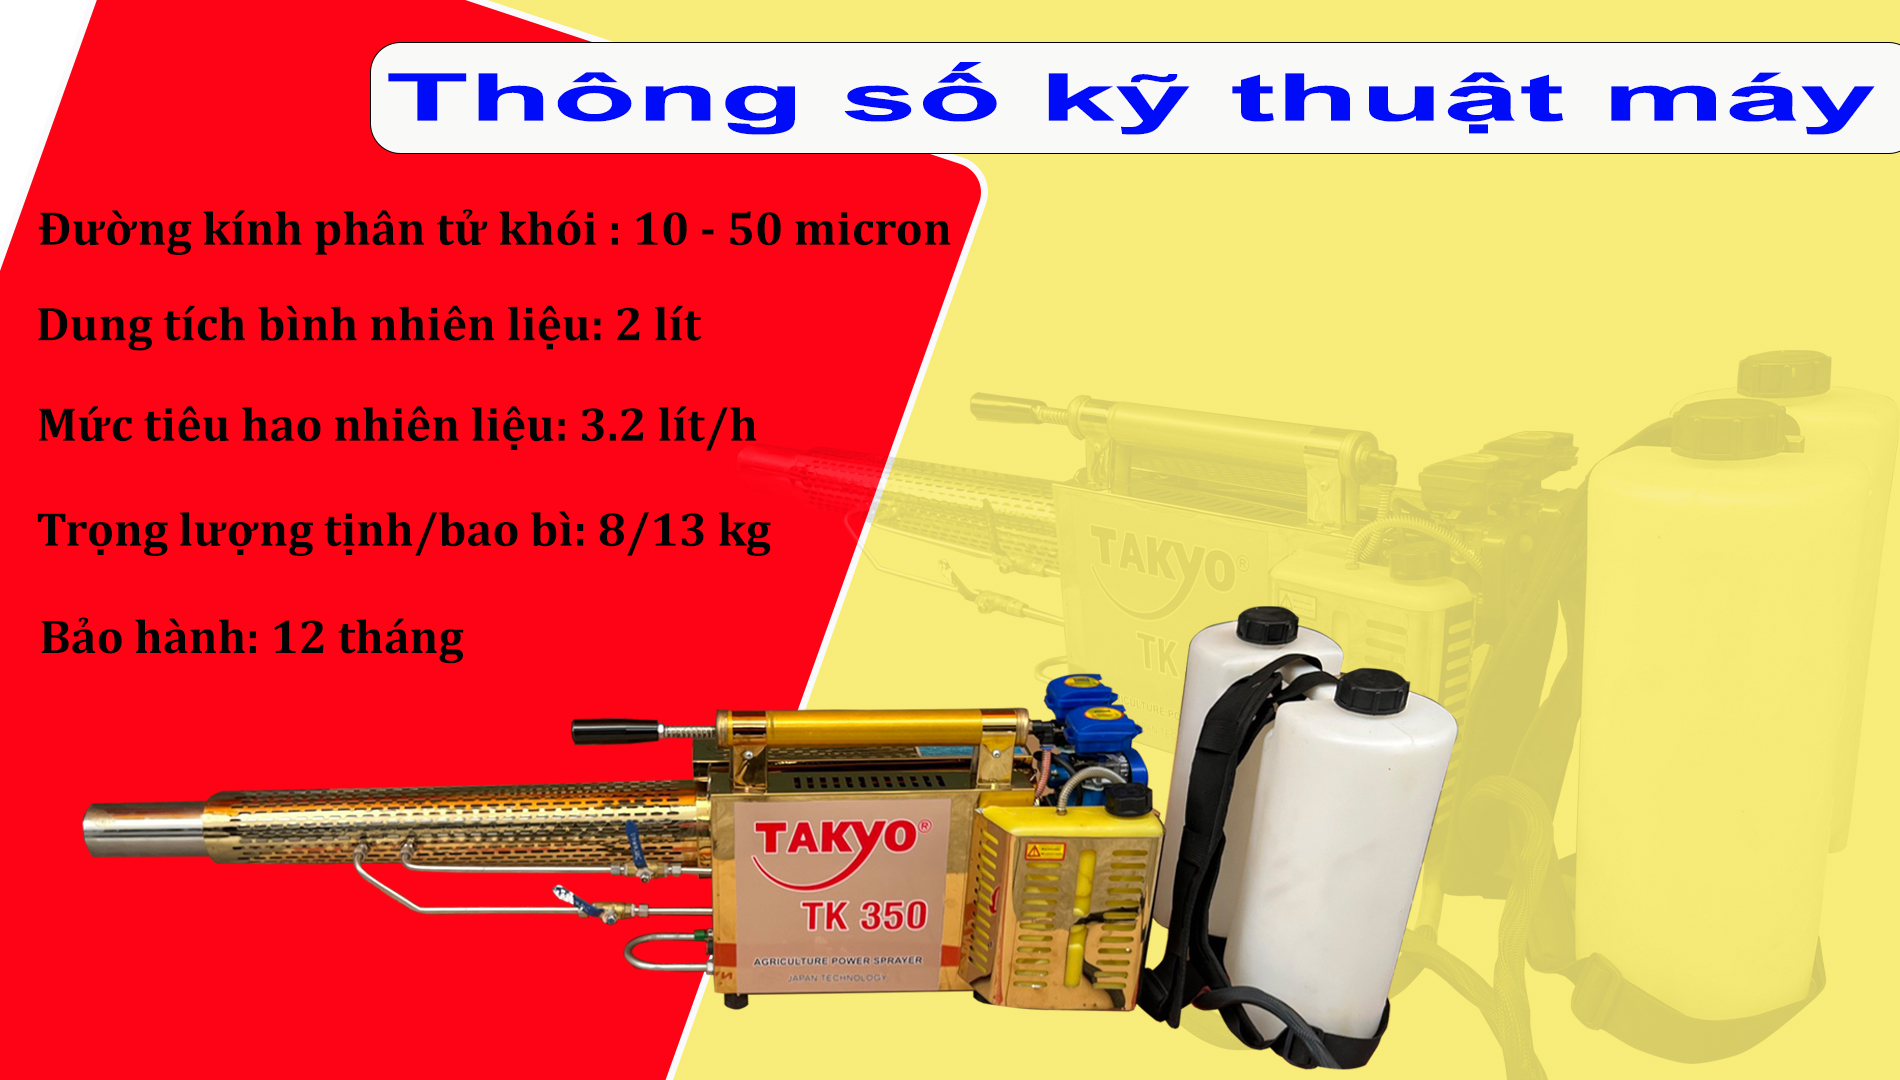 Thông số kỹ thuật máy phun khói Takyo TK 350